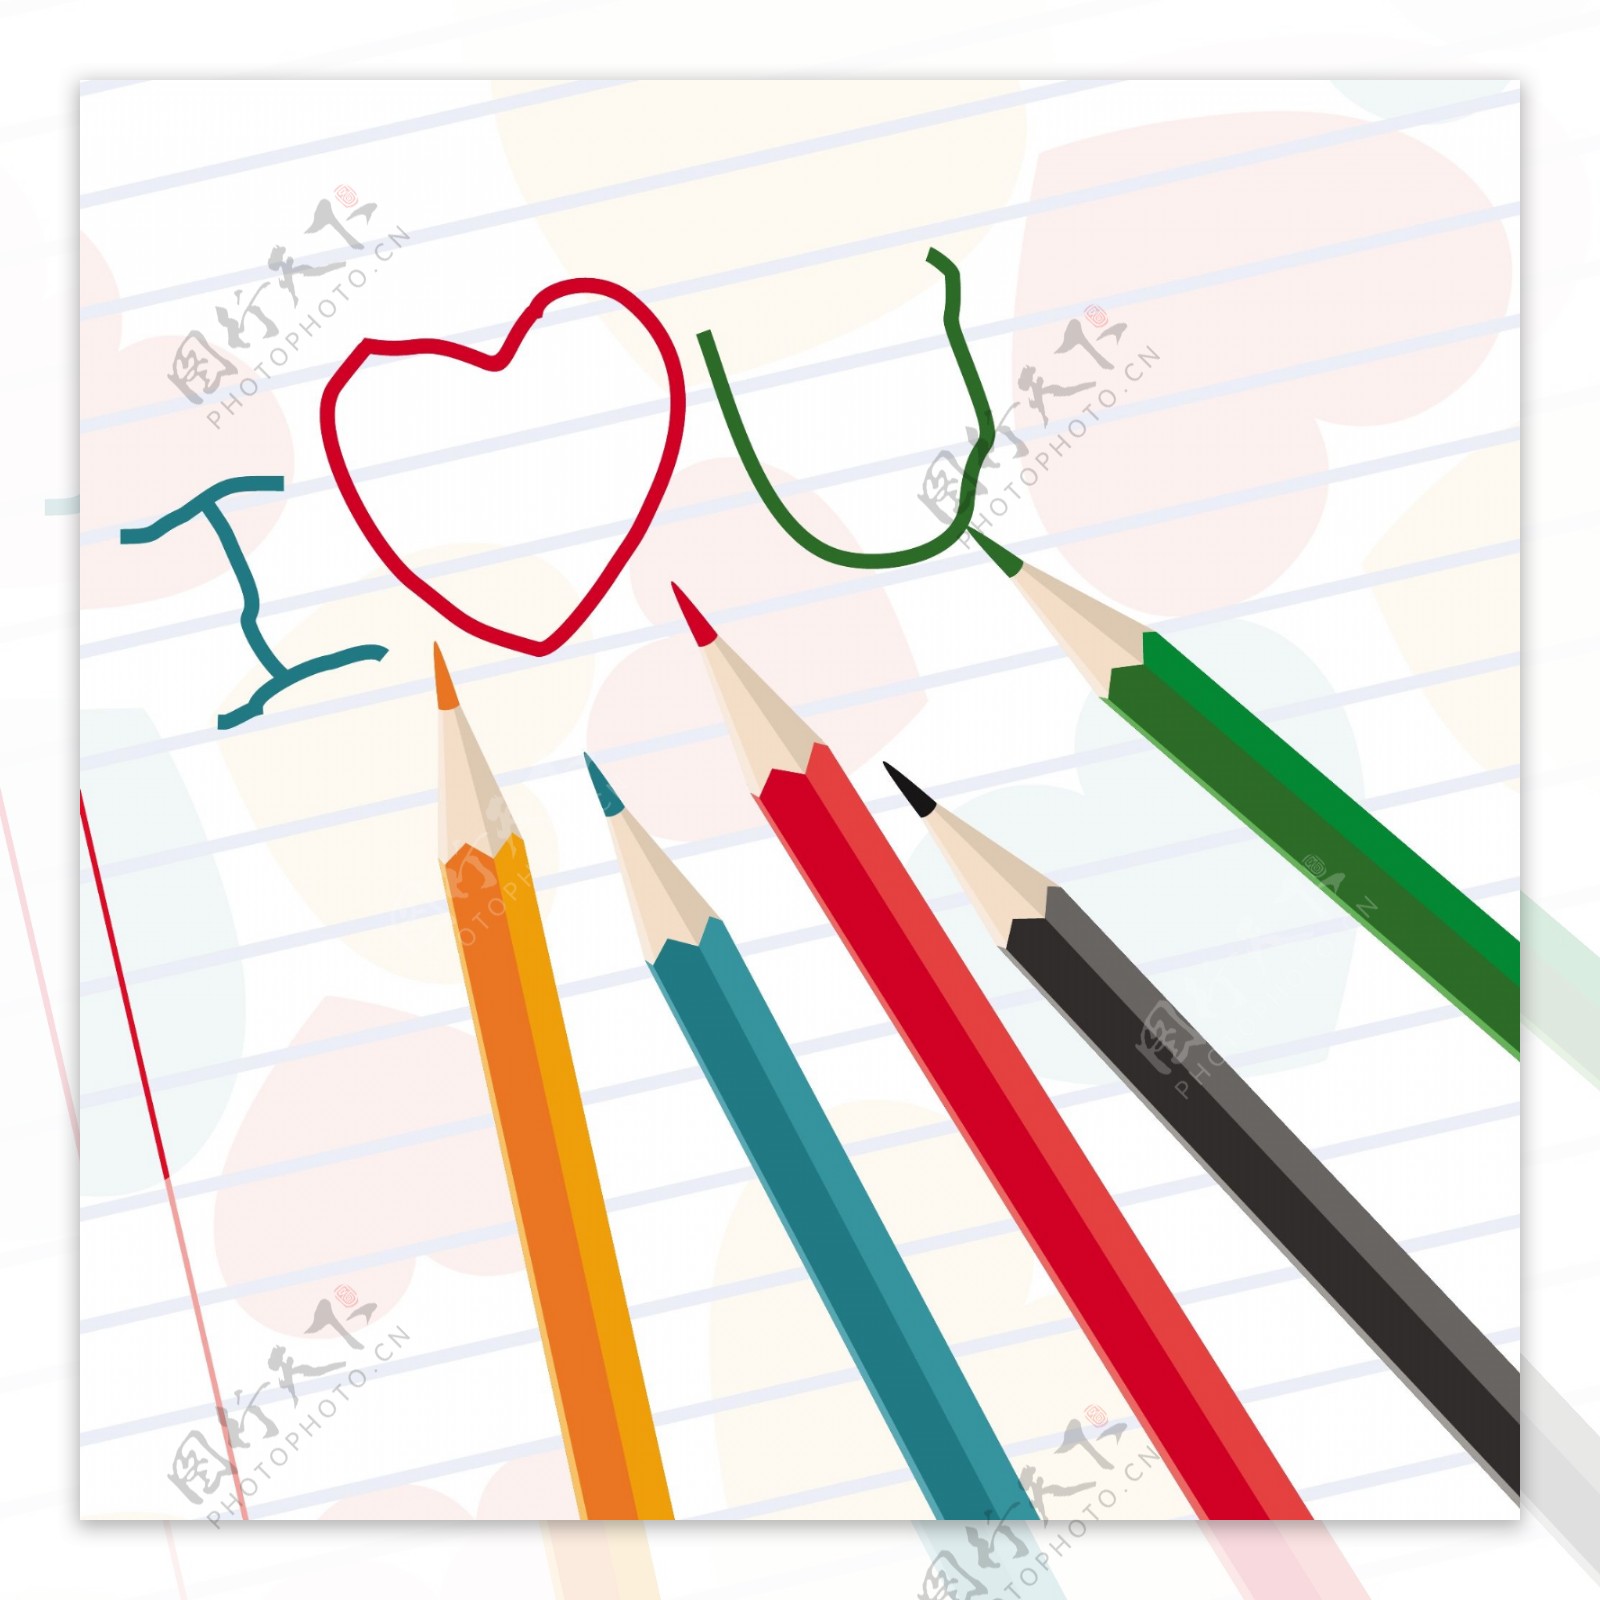 手工绘制的我爱你的信息和彩色铅笔矢量笔记本纸